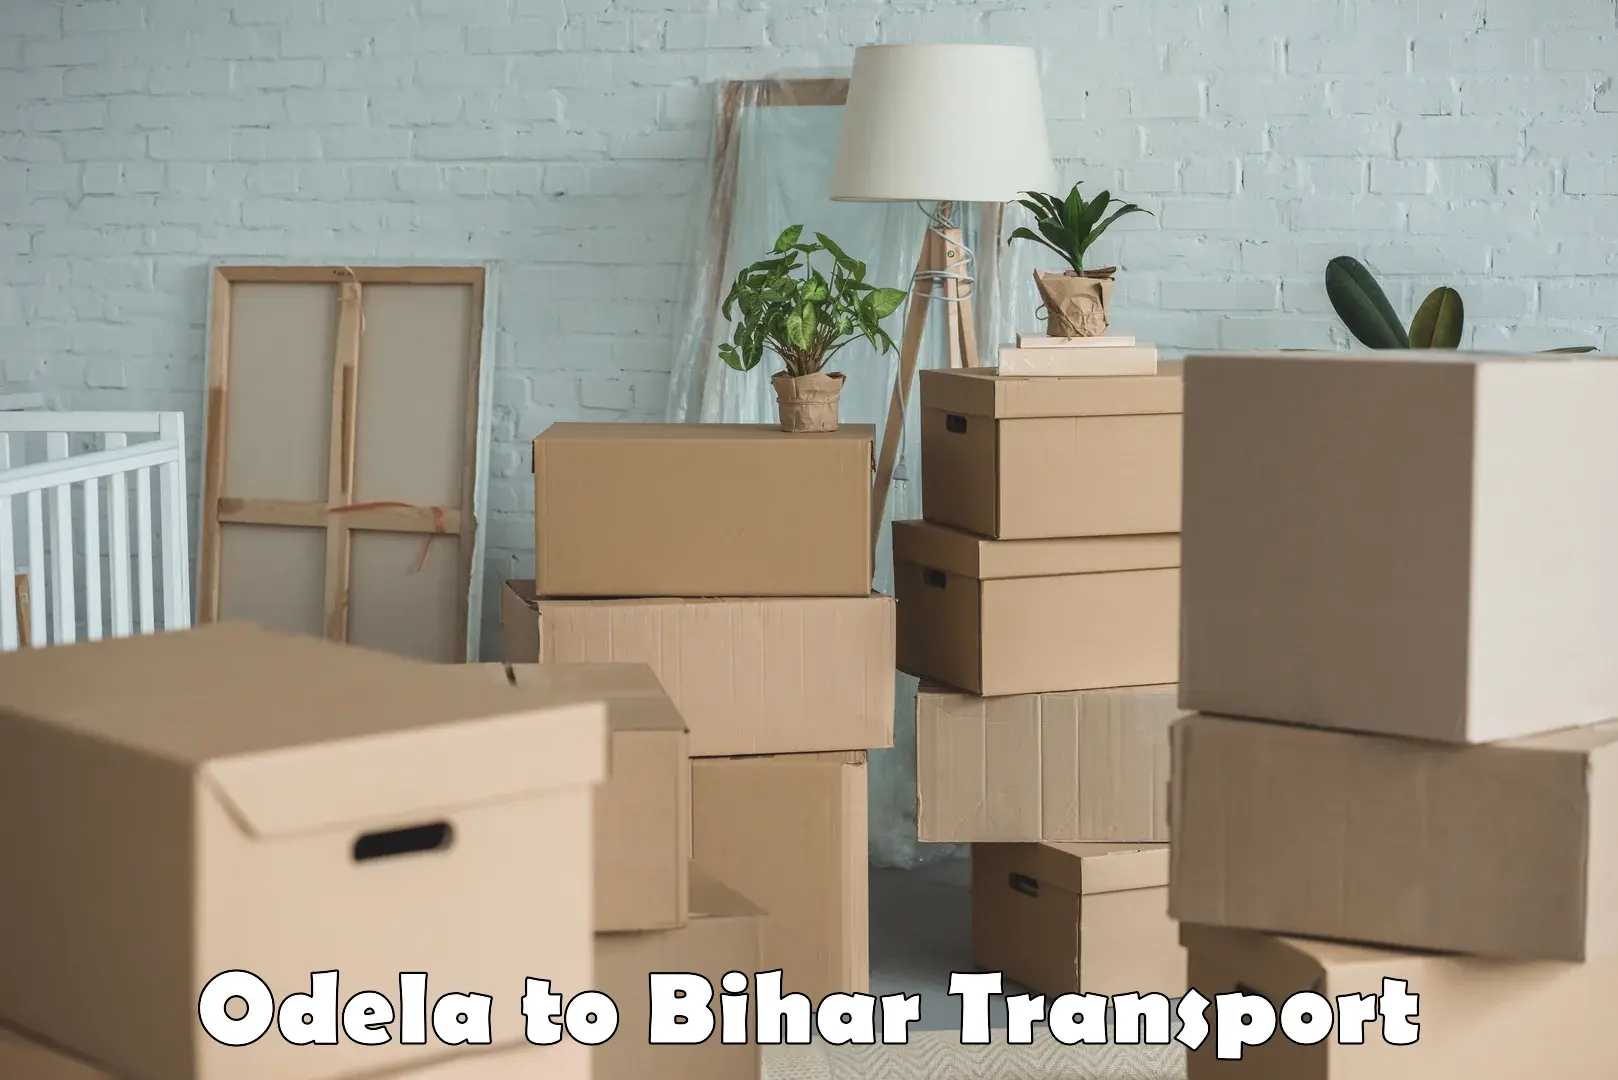 Land transport services Odela to Patna